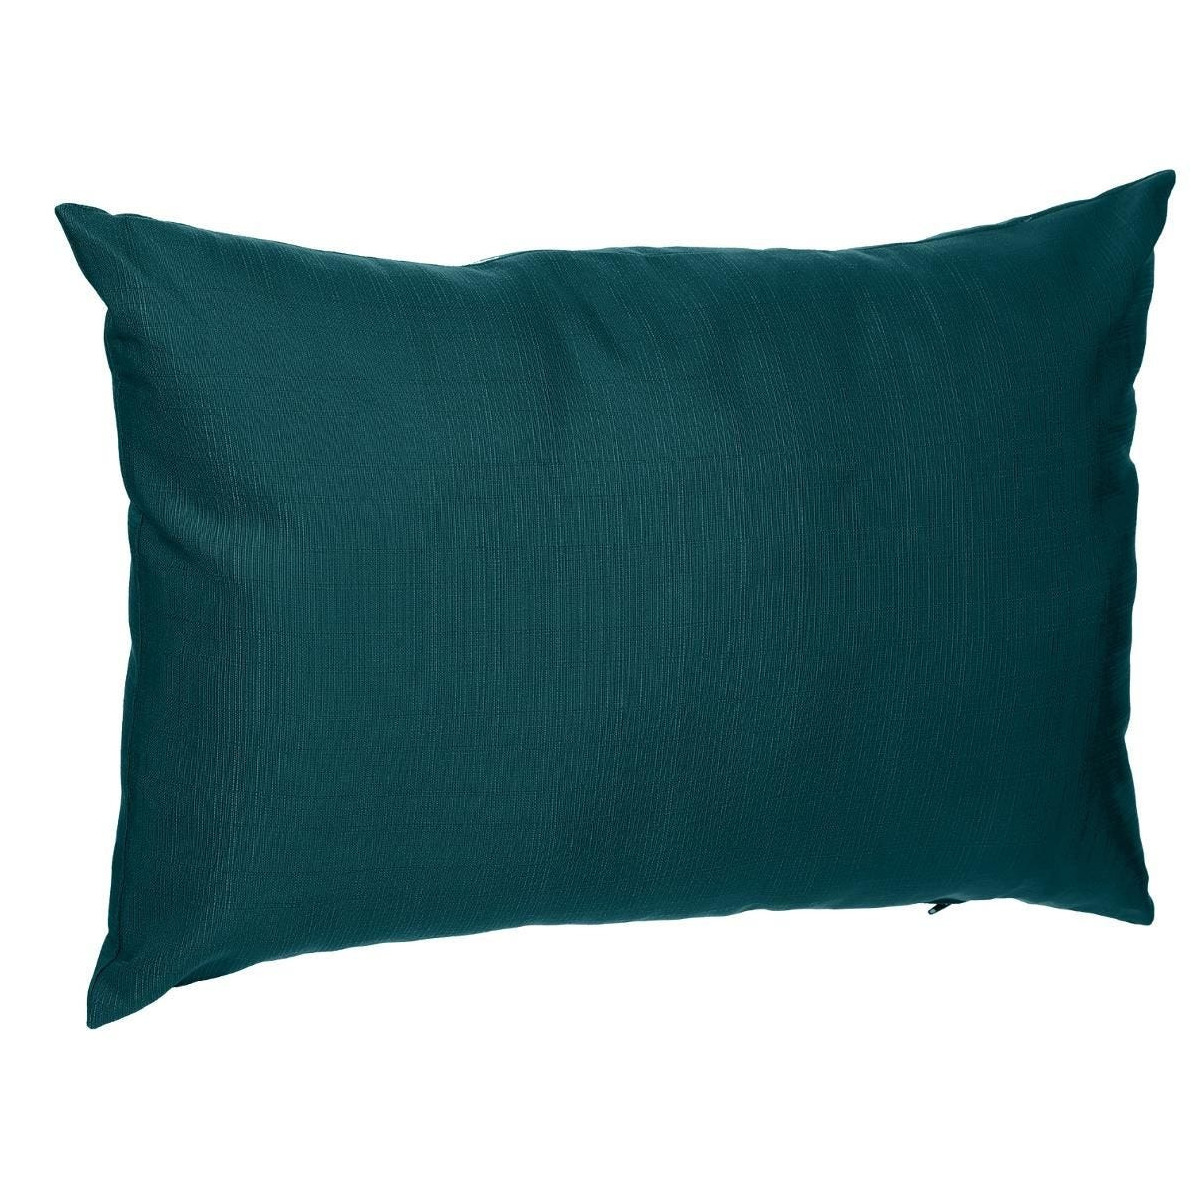 Bank-sier-tuin kussens voor binnen en buiten in de kleur emerald groen 30 x 50 x 10 cm